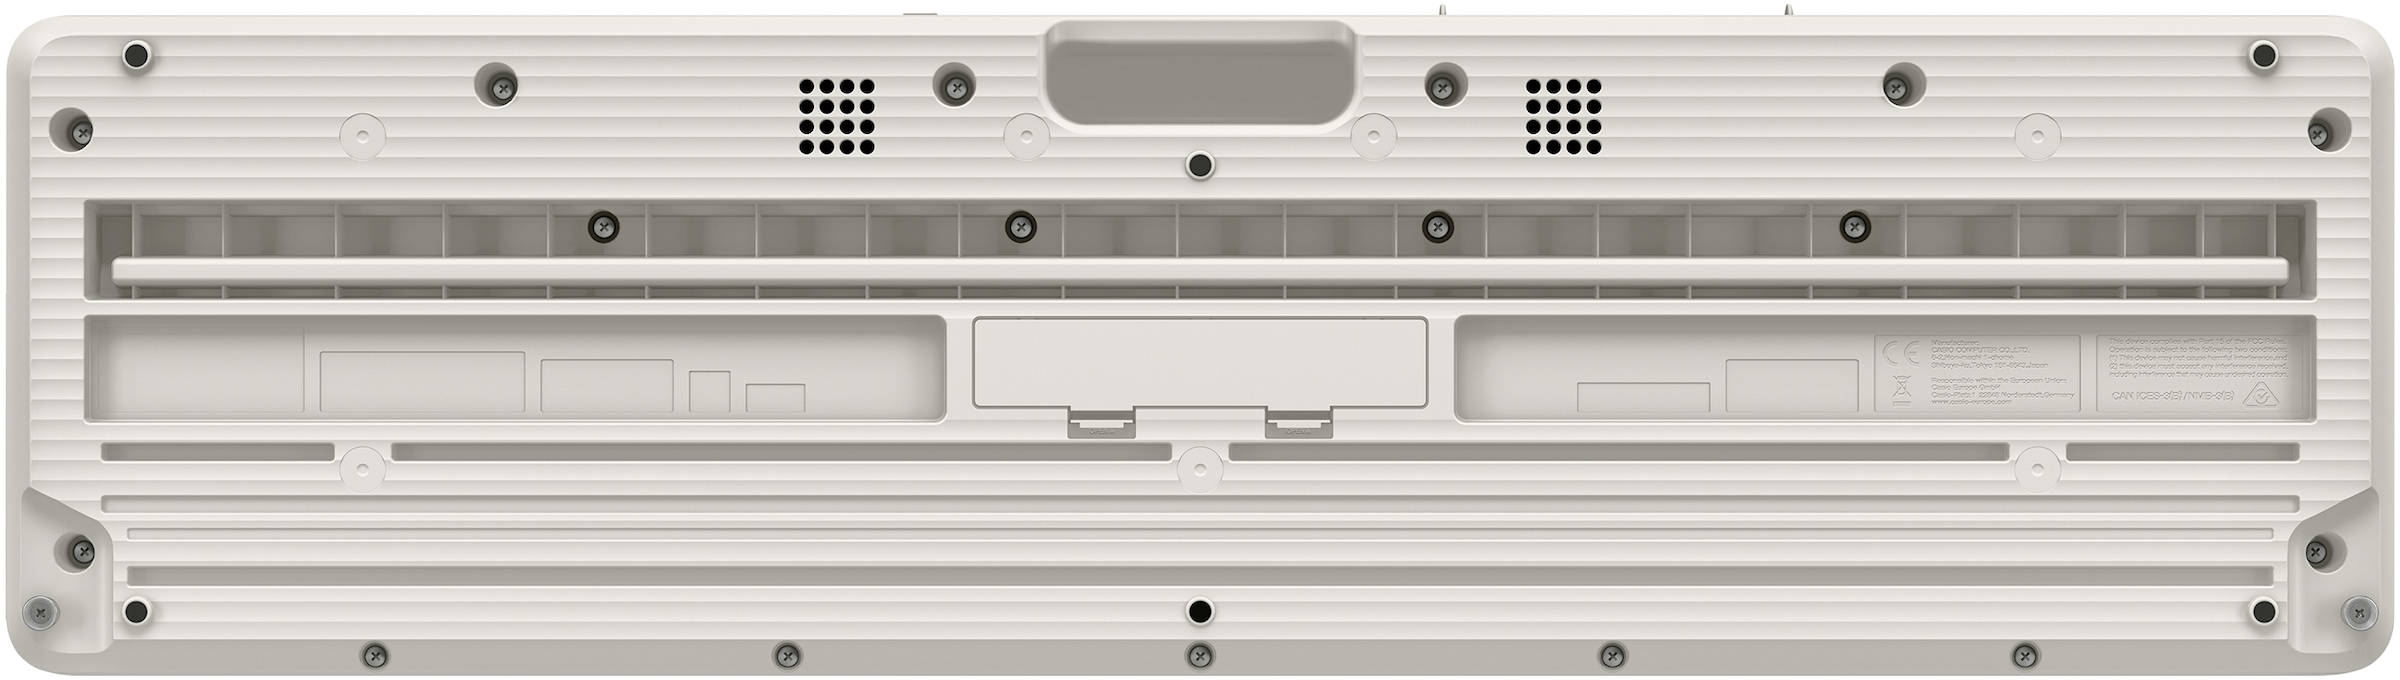 CASIO Home-Keyboard »Piano-Keyboard-Set CT-S1WESET«, (Set, inkl. Keyboardständer, Sustainpedal und Netzteil), ideal für Piano-Einsteiger und Klanggourmets;